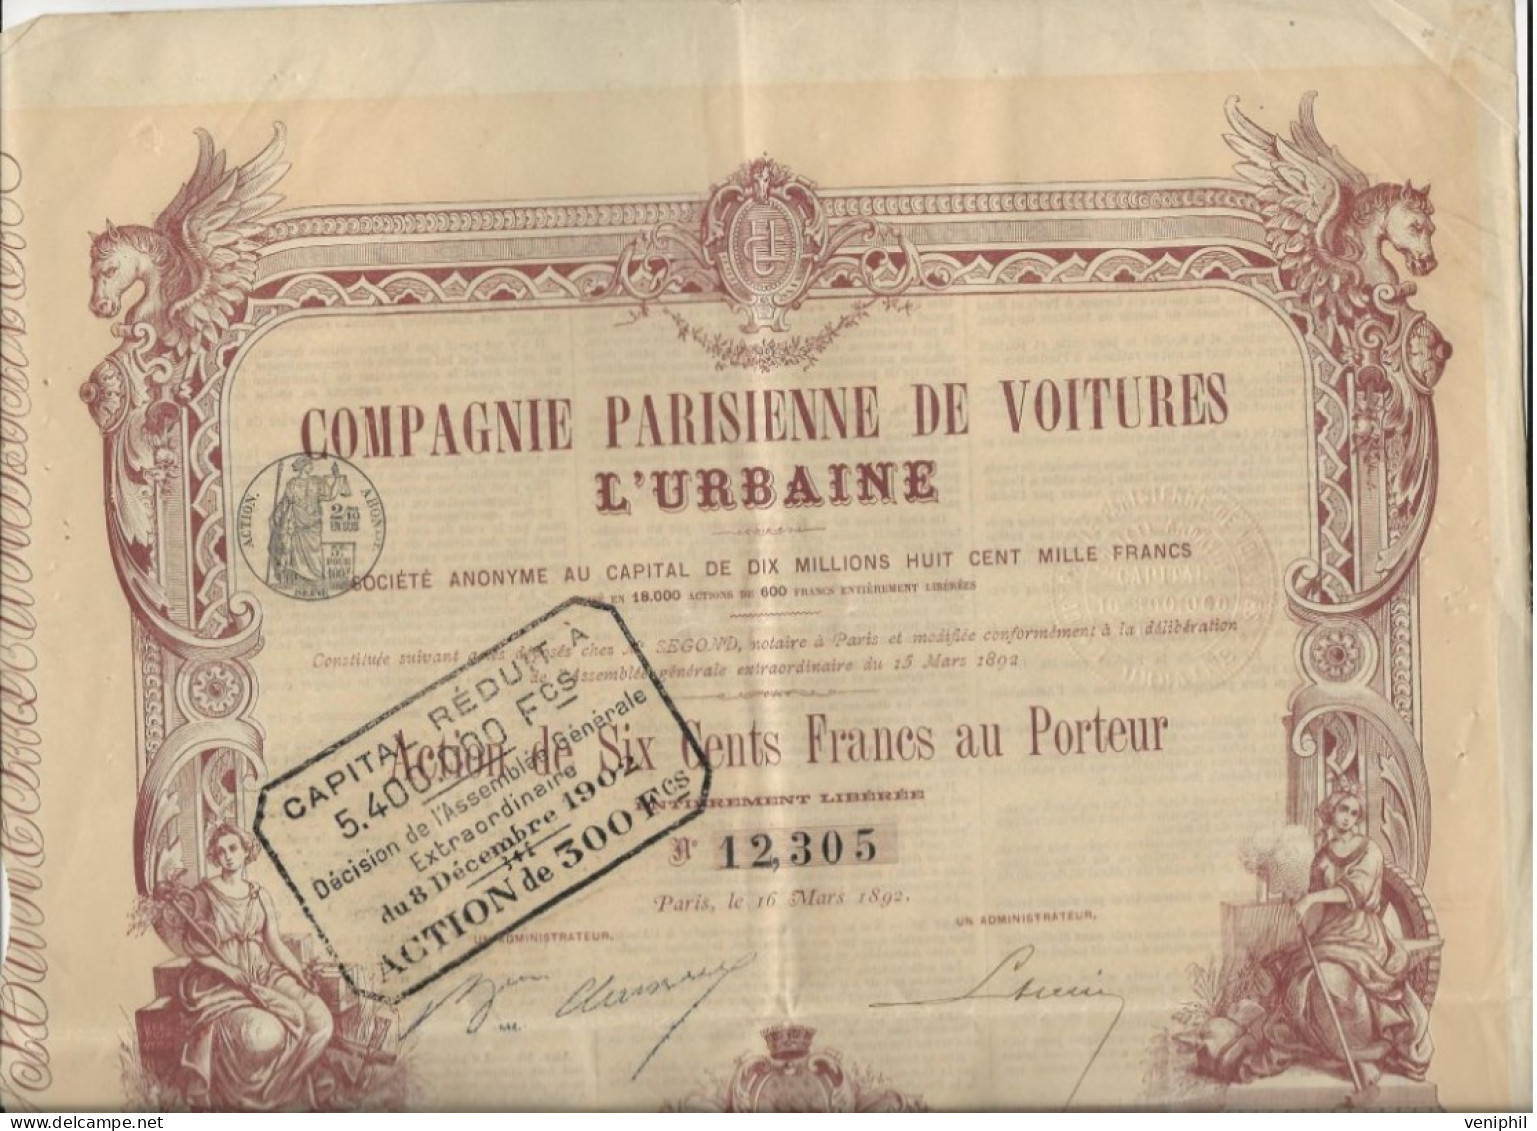 COMPAGNIE PARISIENNE DE VOITURES L- ACTION ILLUSTREE DE SIX CENTS FRANCS - ANNEE 1892 - Automobil